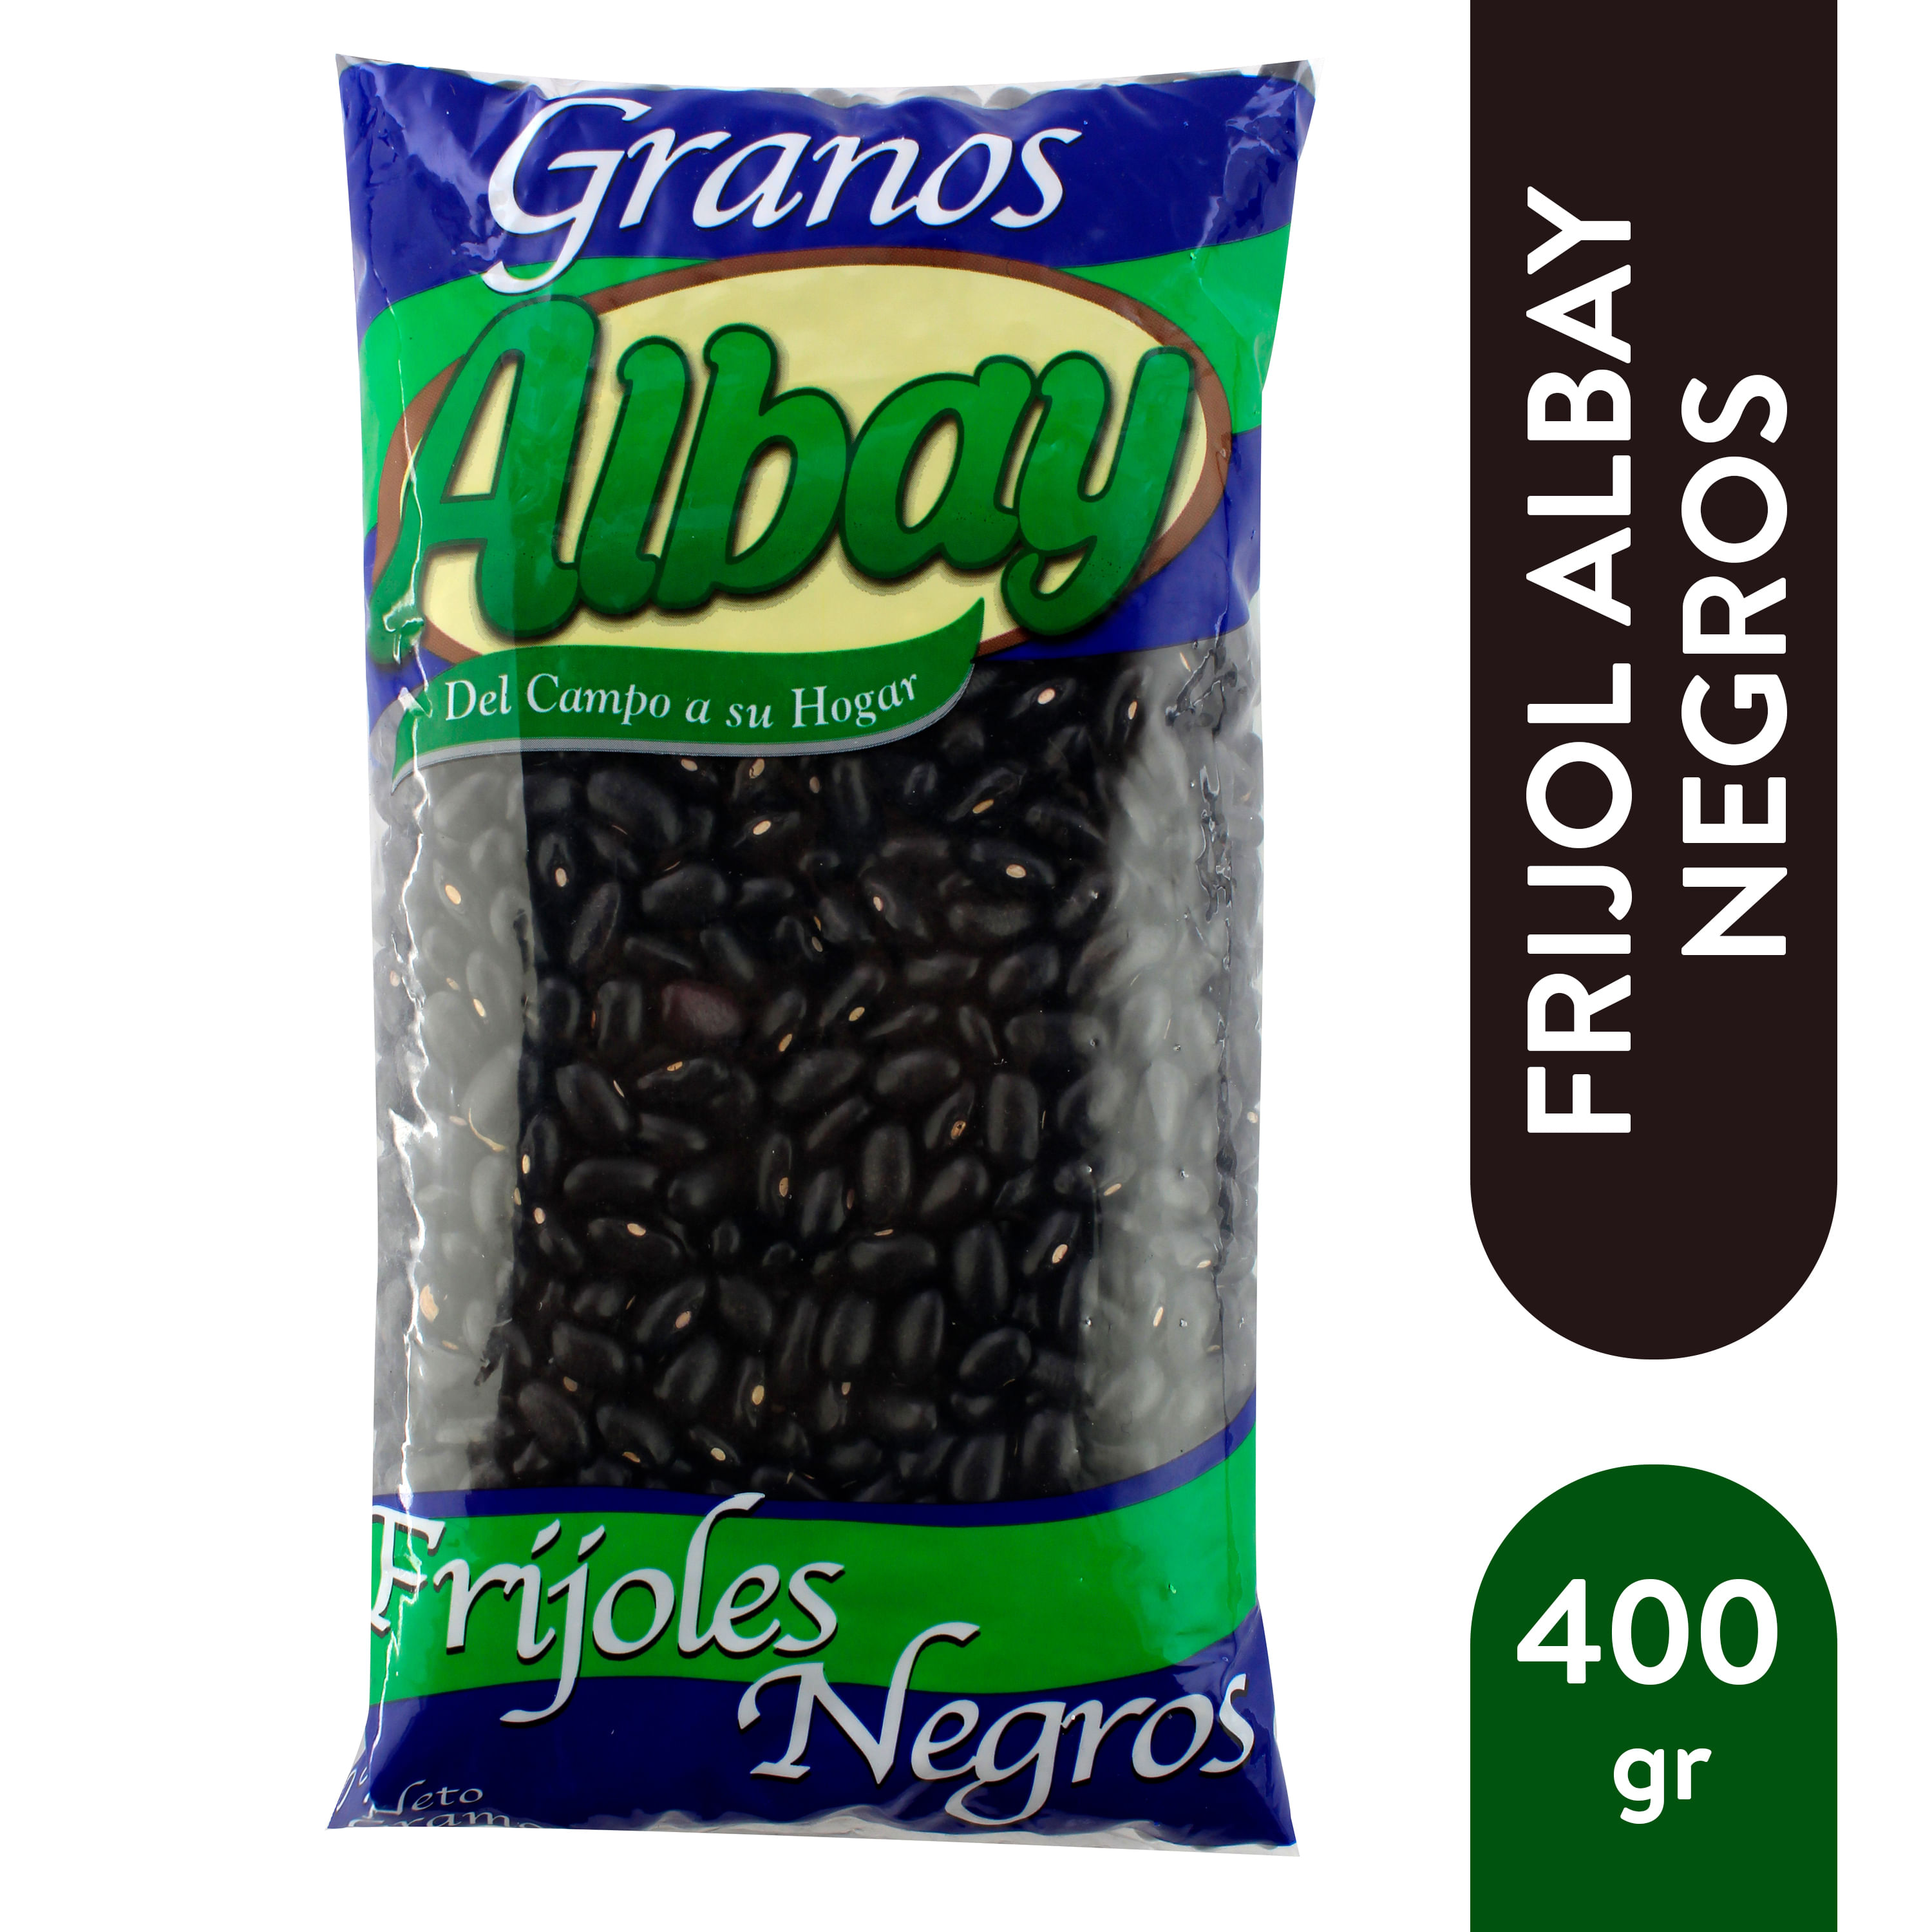 Frijol-Albay-Negro-En-Grano-400gr-1-31053